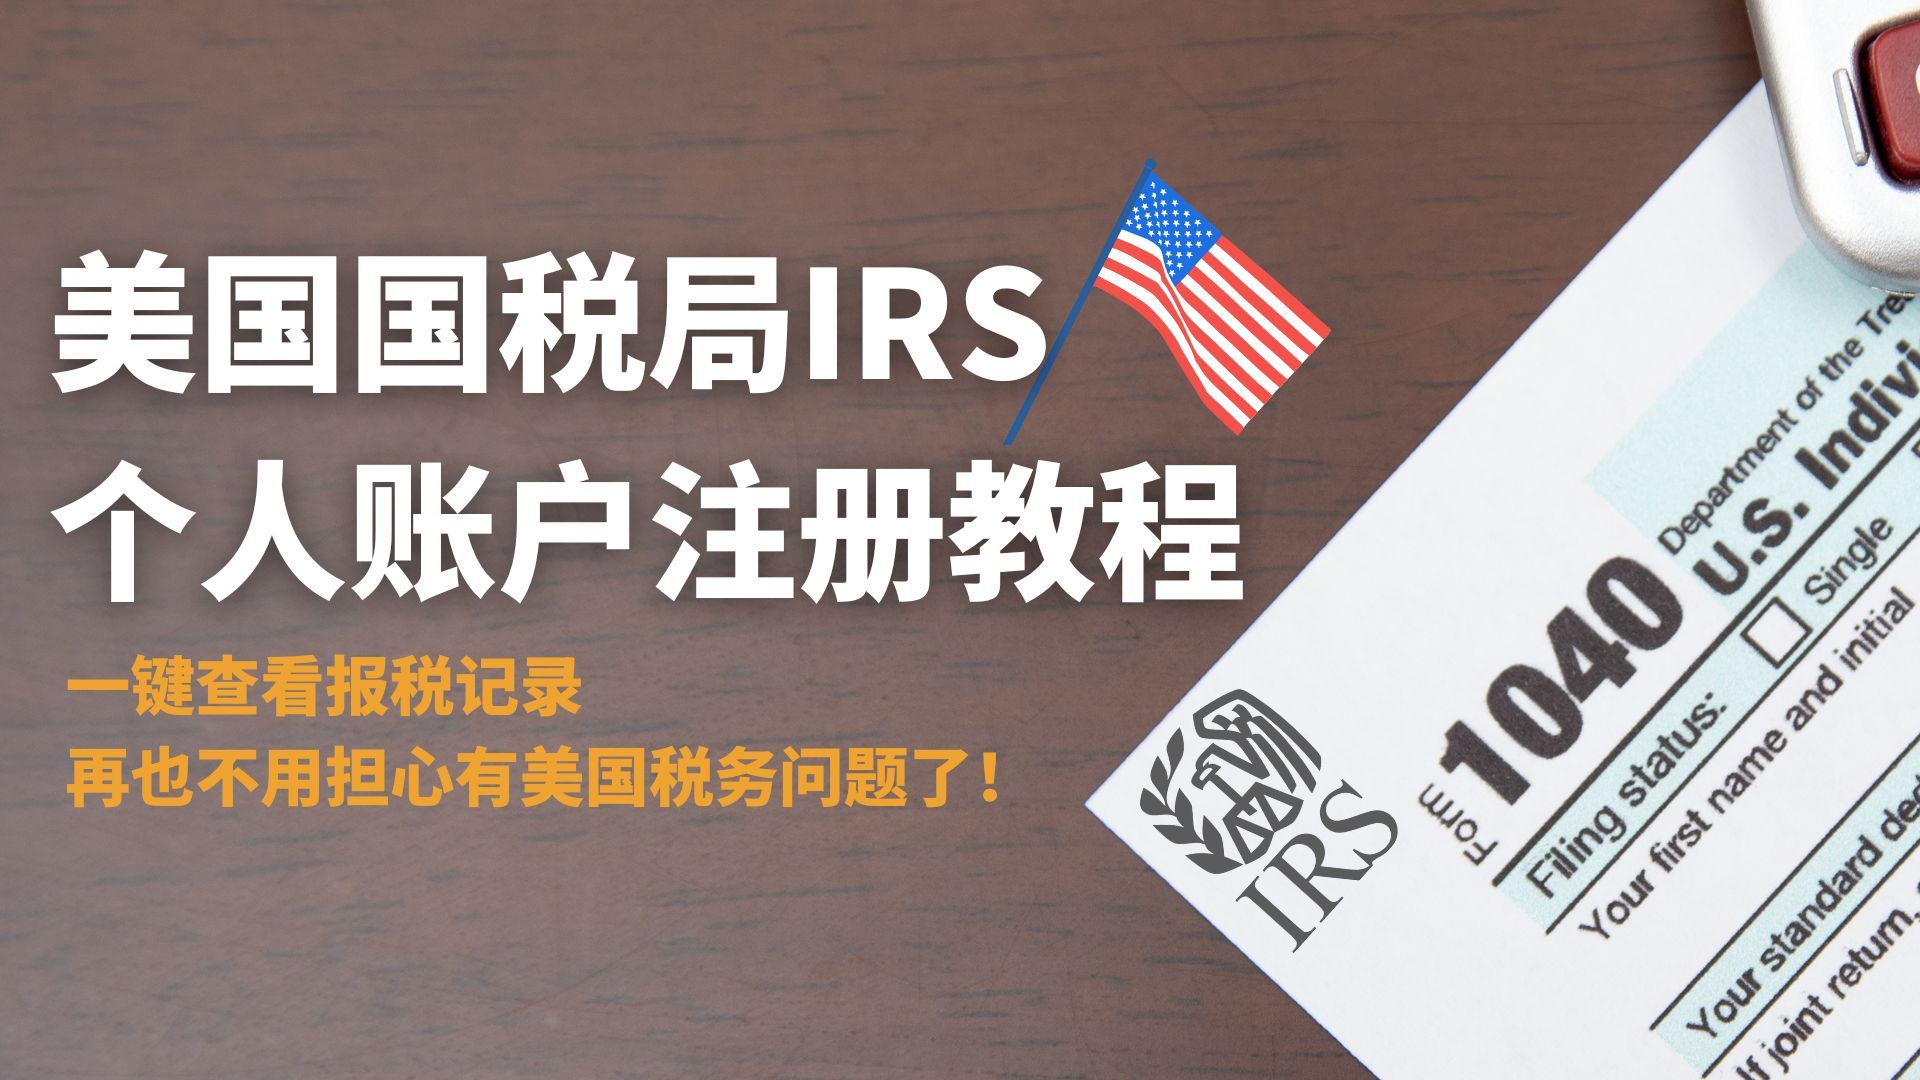 IRS美国国税局个人账户注册教程，中国居民适用，一键查看税务记录，再也不用担心有美国税务问题了！